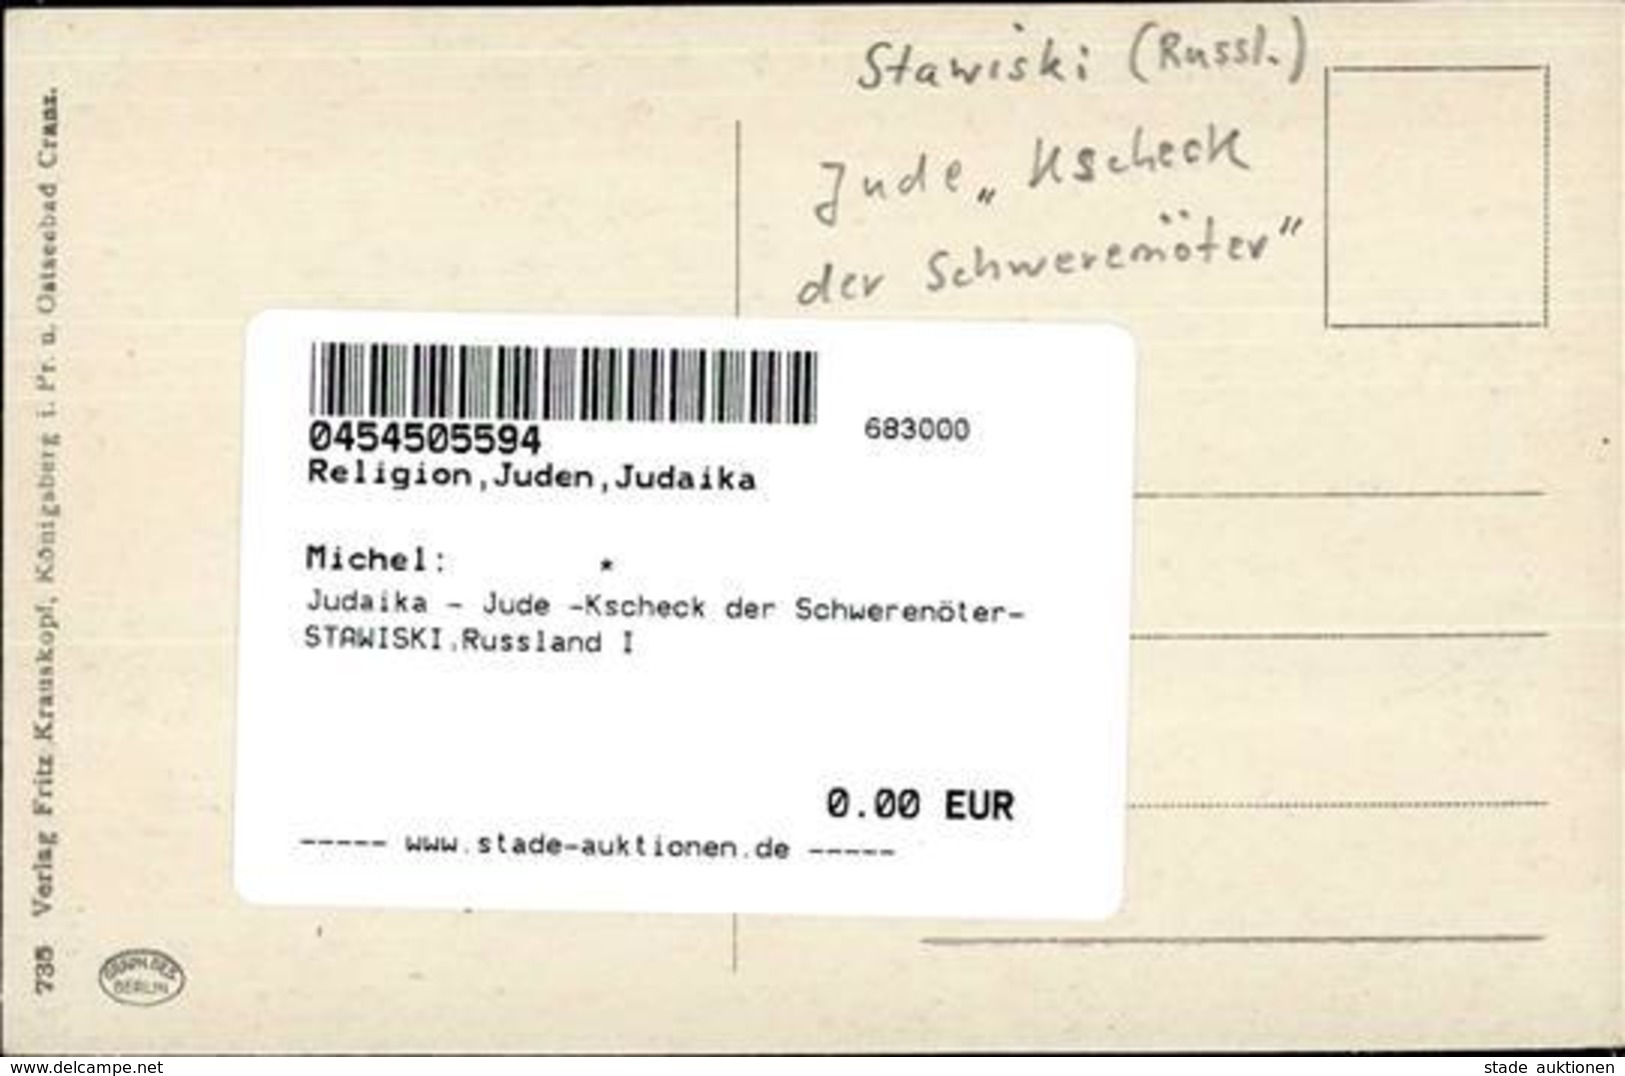 Judaika - Jude -Kscheck Der Schwerenöter- STAWISKI,Russland I Judaisme - Judaika